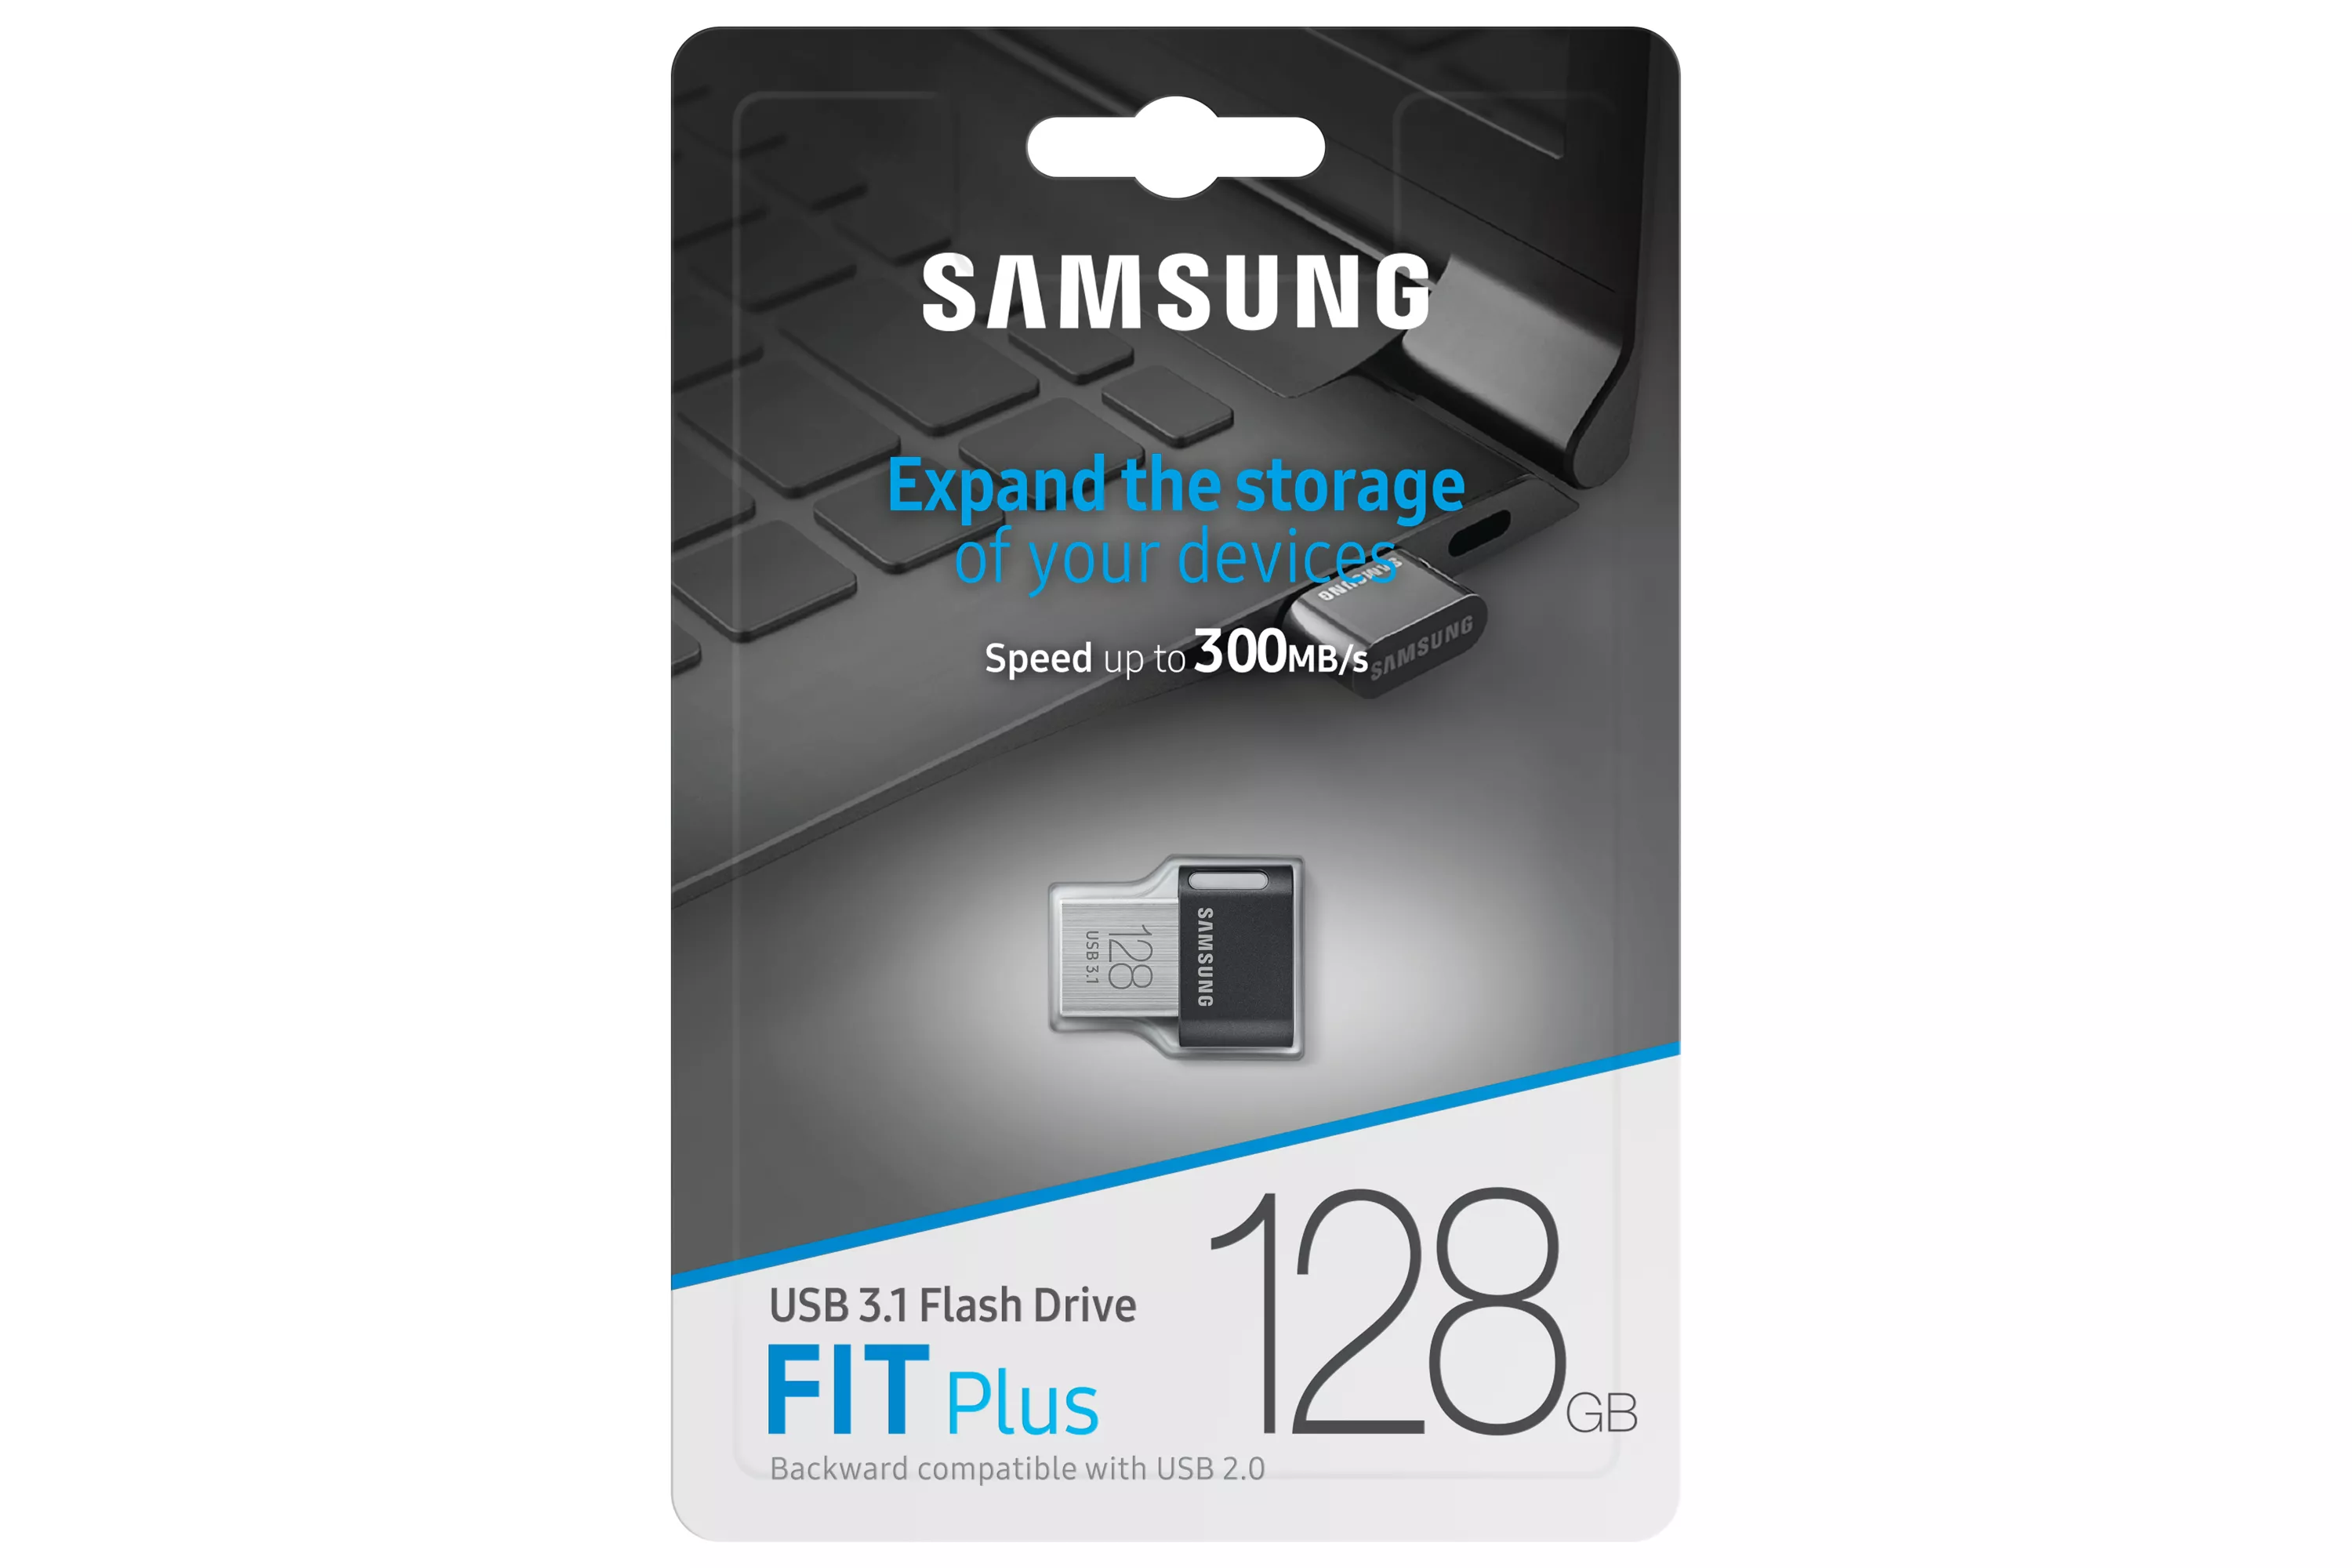 Achat SAMSUNG FIT PLUS 128Go USB 3.1 sur hello RSE - visuel 7